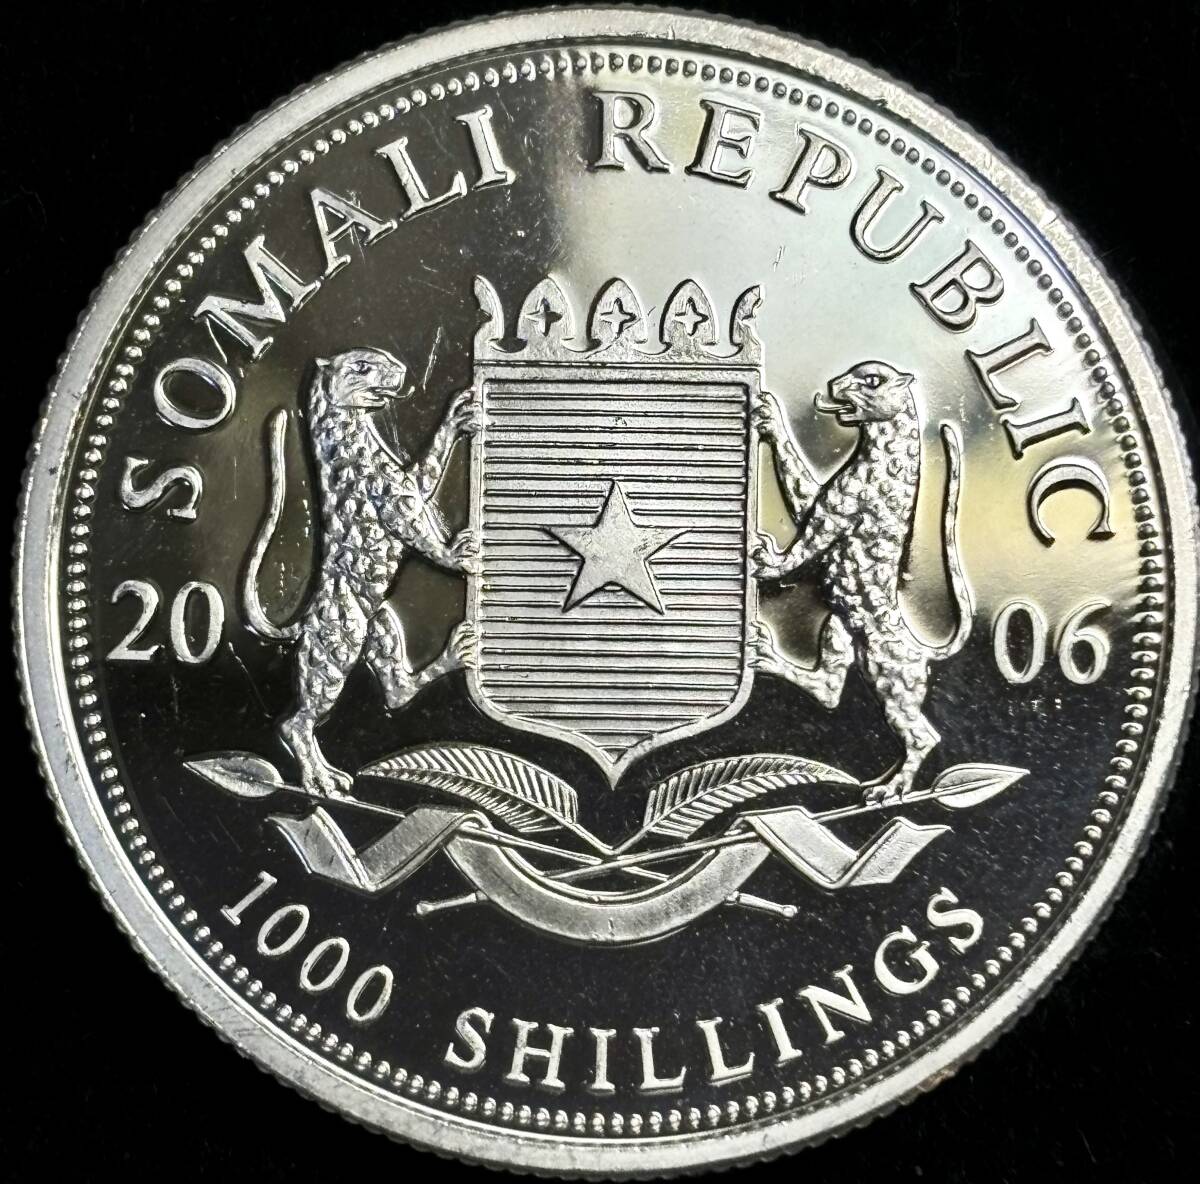 【ソマリア大型銀貨】(1オンス純銀 直径39mm 2006年銘 プルーフ)の画像2